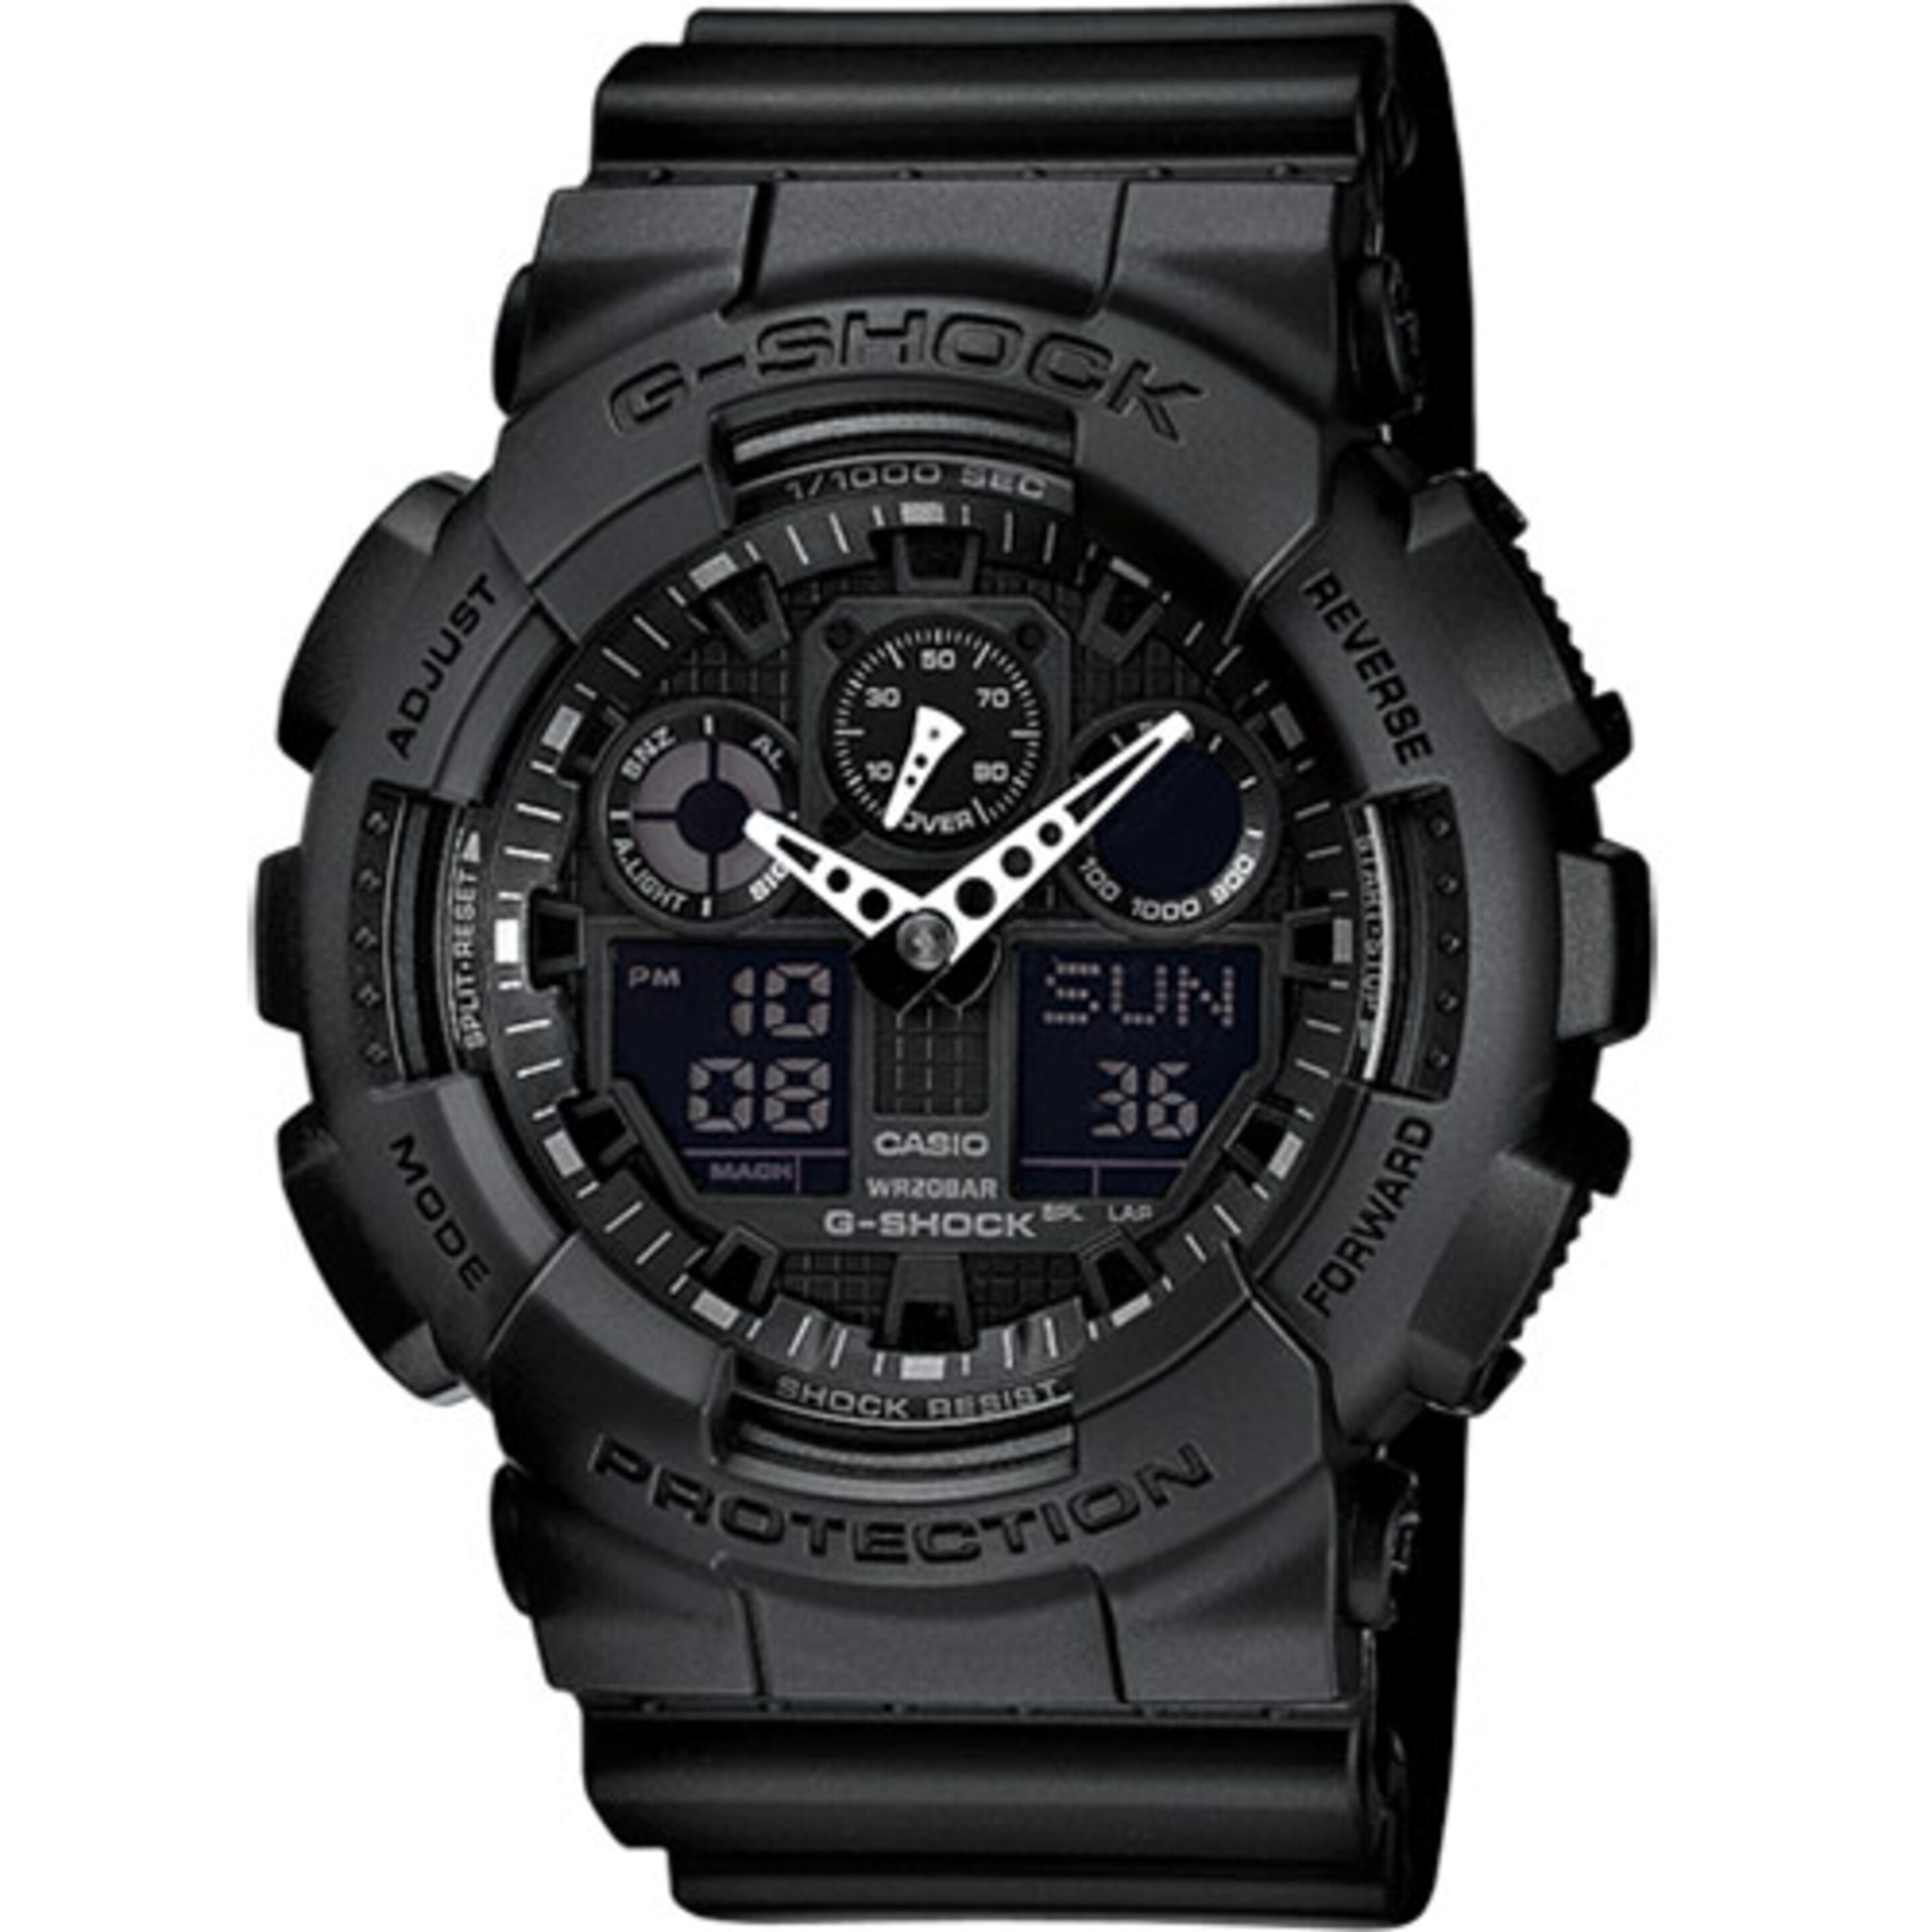 Reloj Casio G-shock Ga-100-1a1er - Reloj Deportivo  MKP